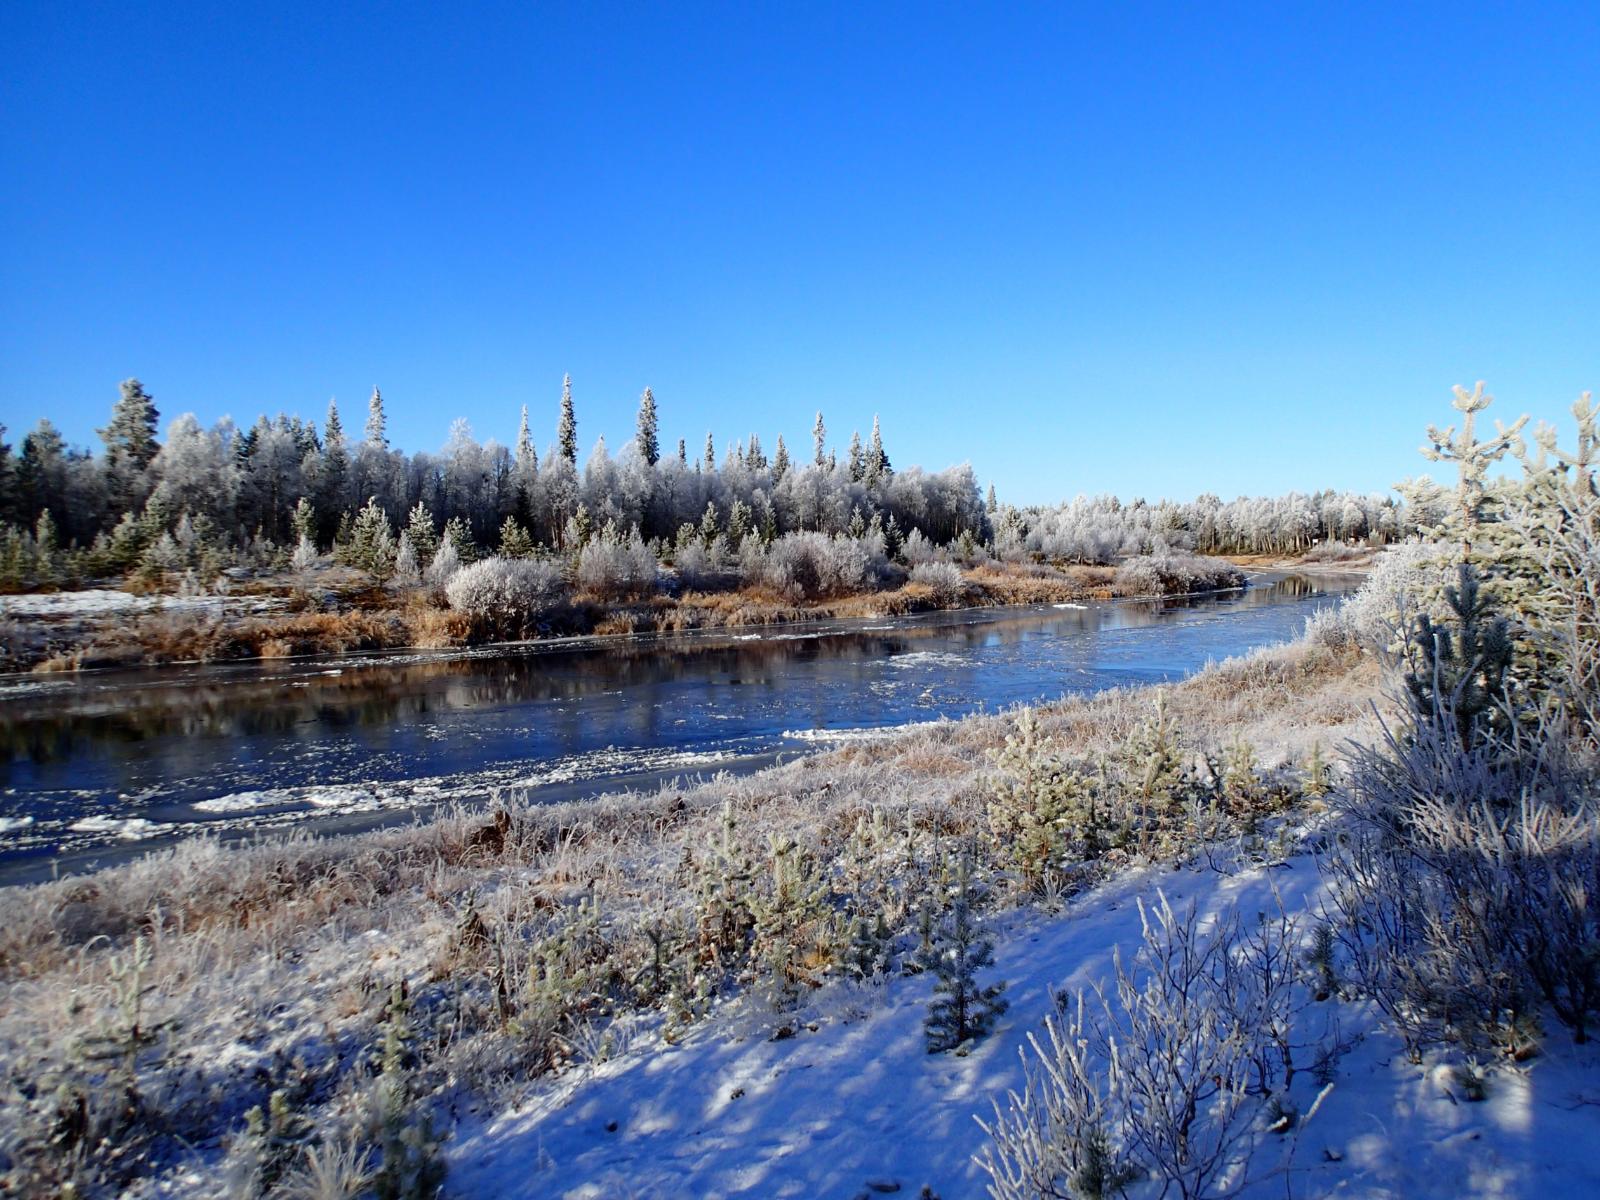 Osittain jäätynyt Kemijoki virtaa kuuraisen metsän reunustamana aurinkoisena päivänä.